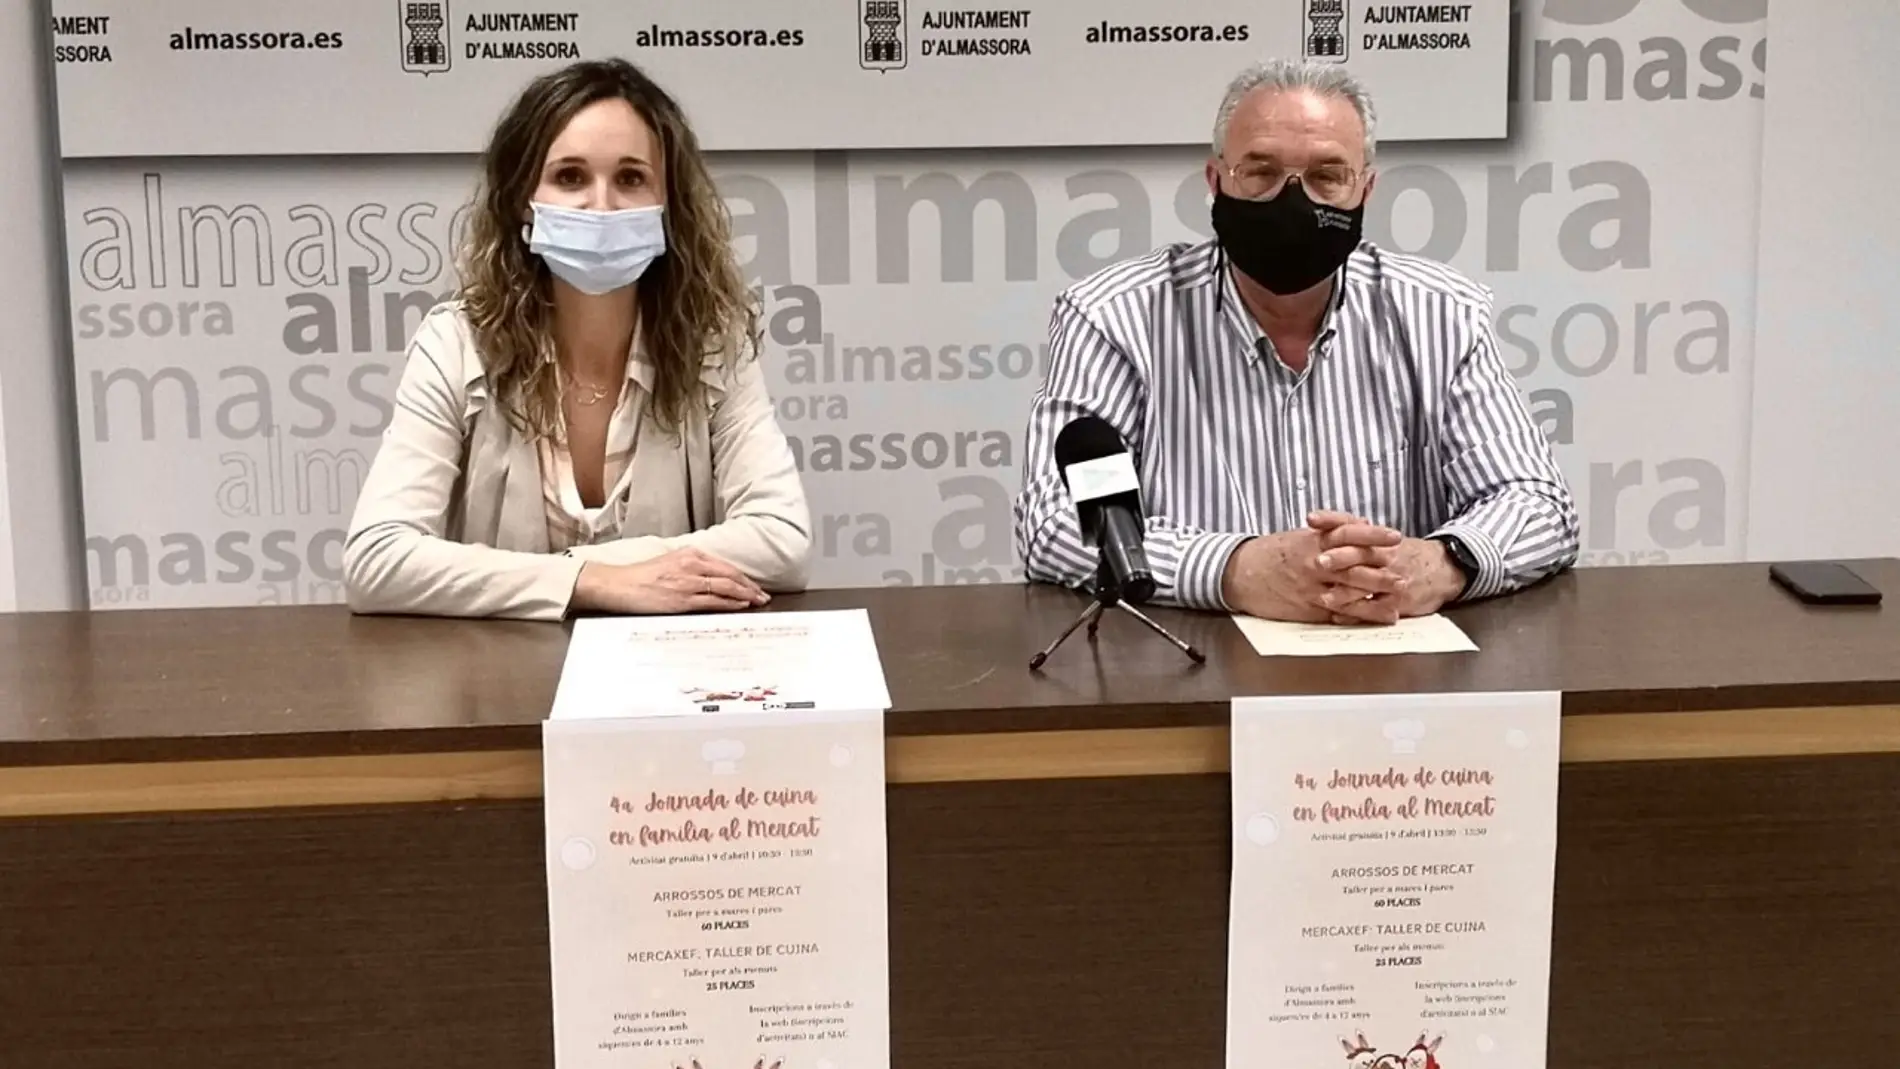 El Ayuntamiento de Almassora organiza la IV jornada de Cuina en Familia